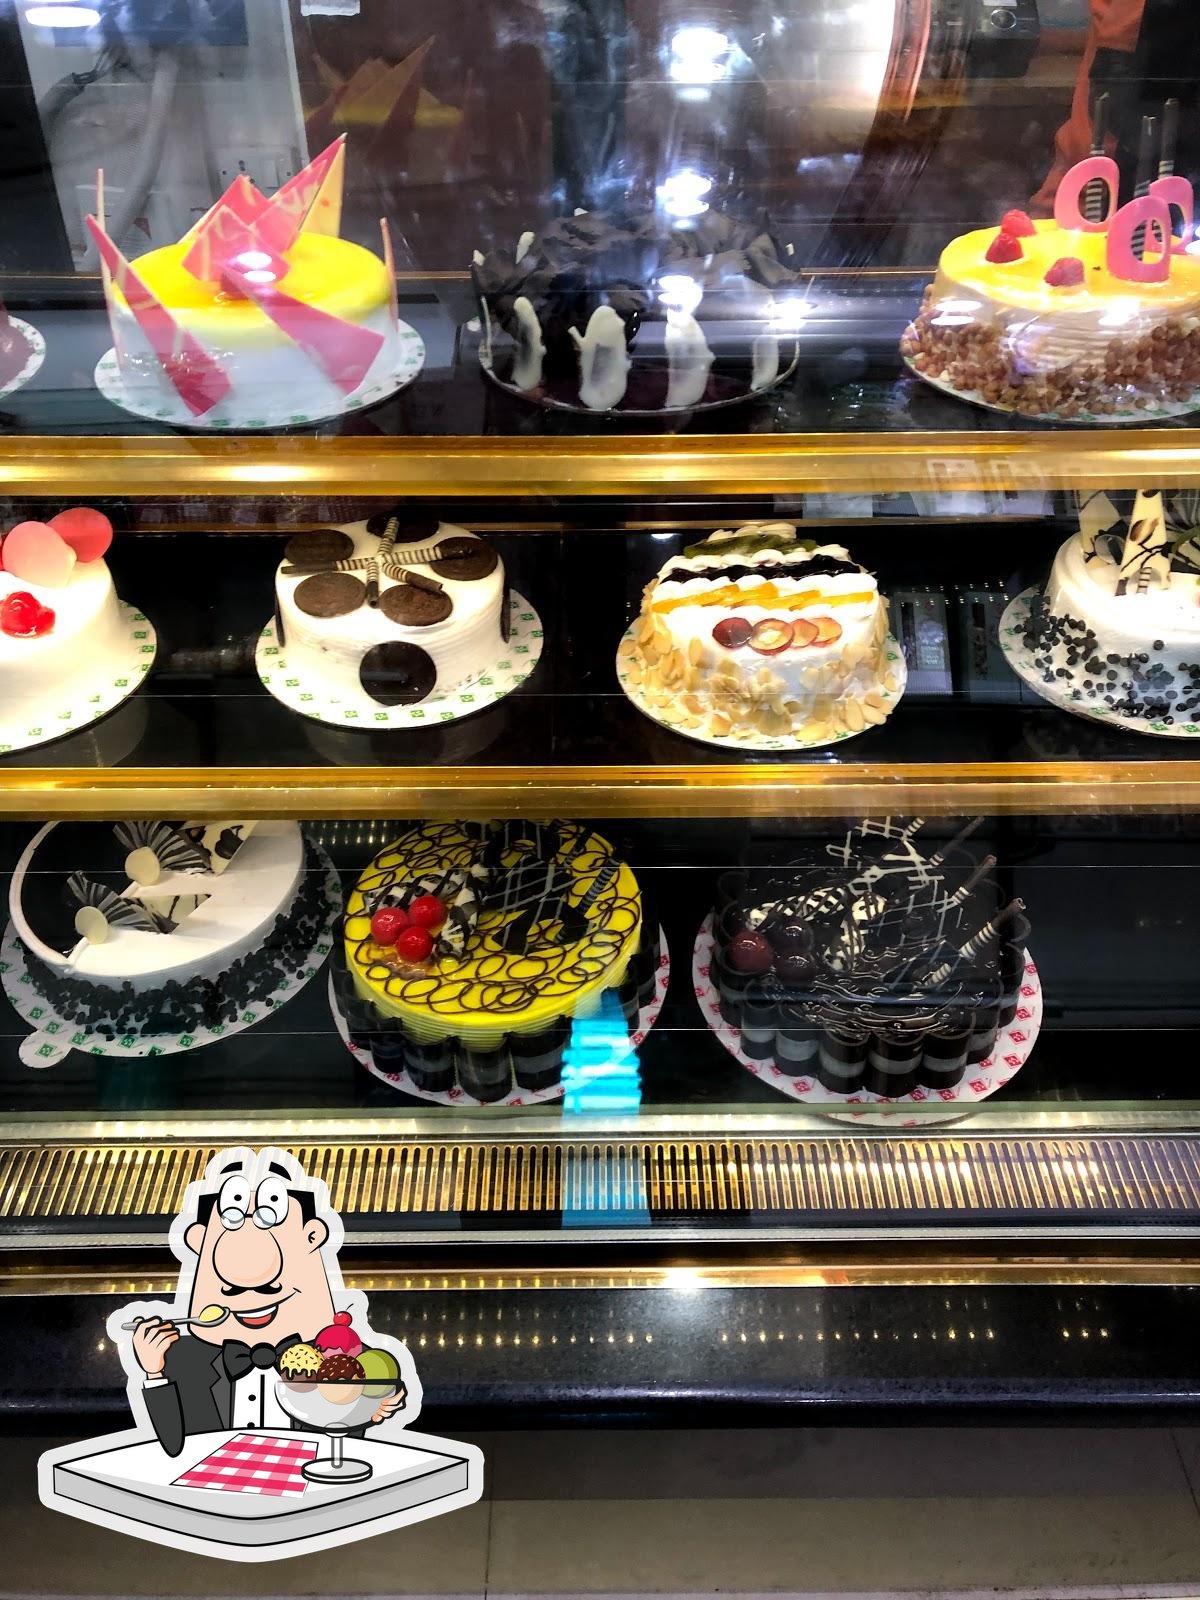 New bakery alert!! #minnesota #touslesjours #asianpastry #cake | TikTok